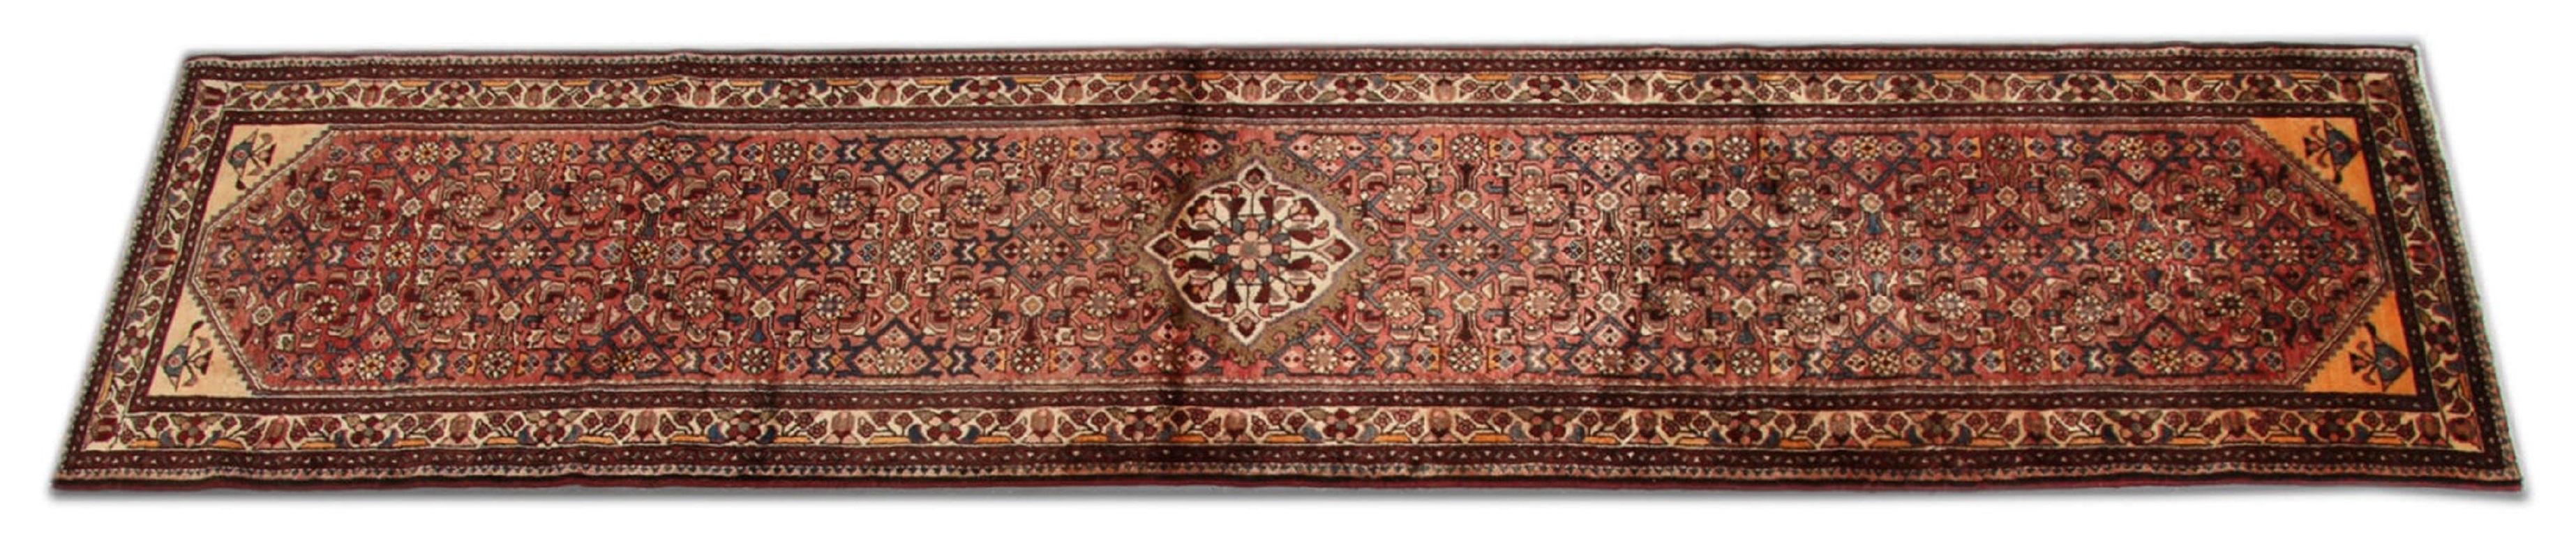 Art Deco Vintage Farahan Carpet Runner, Geometric Medallion Traditional Rug For Sale